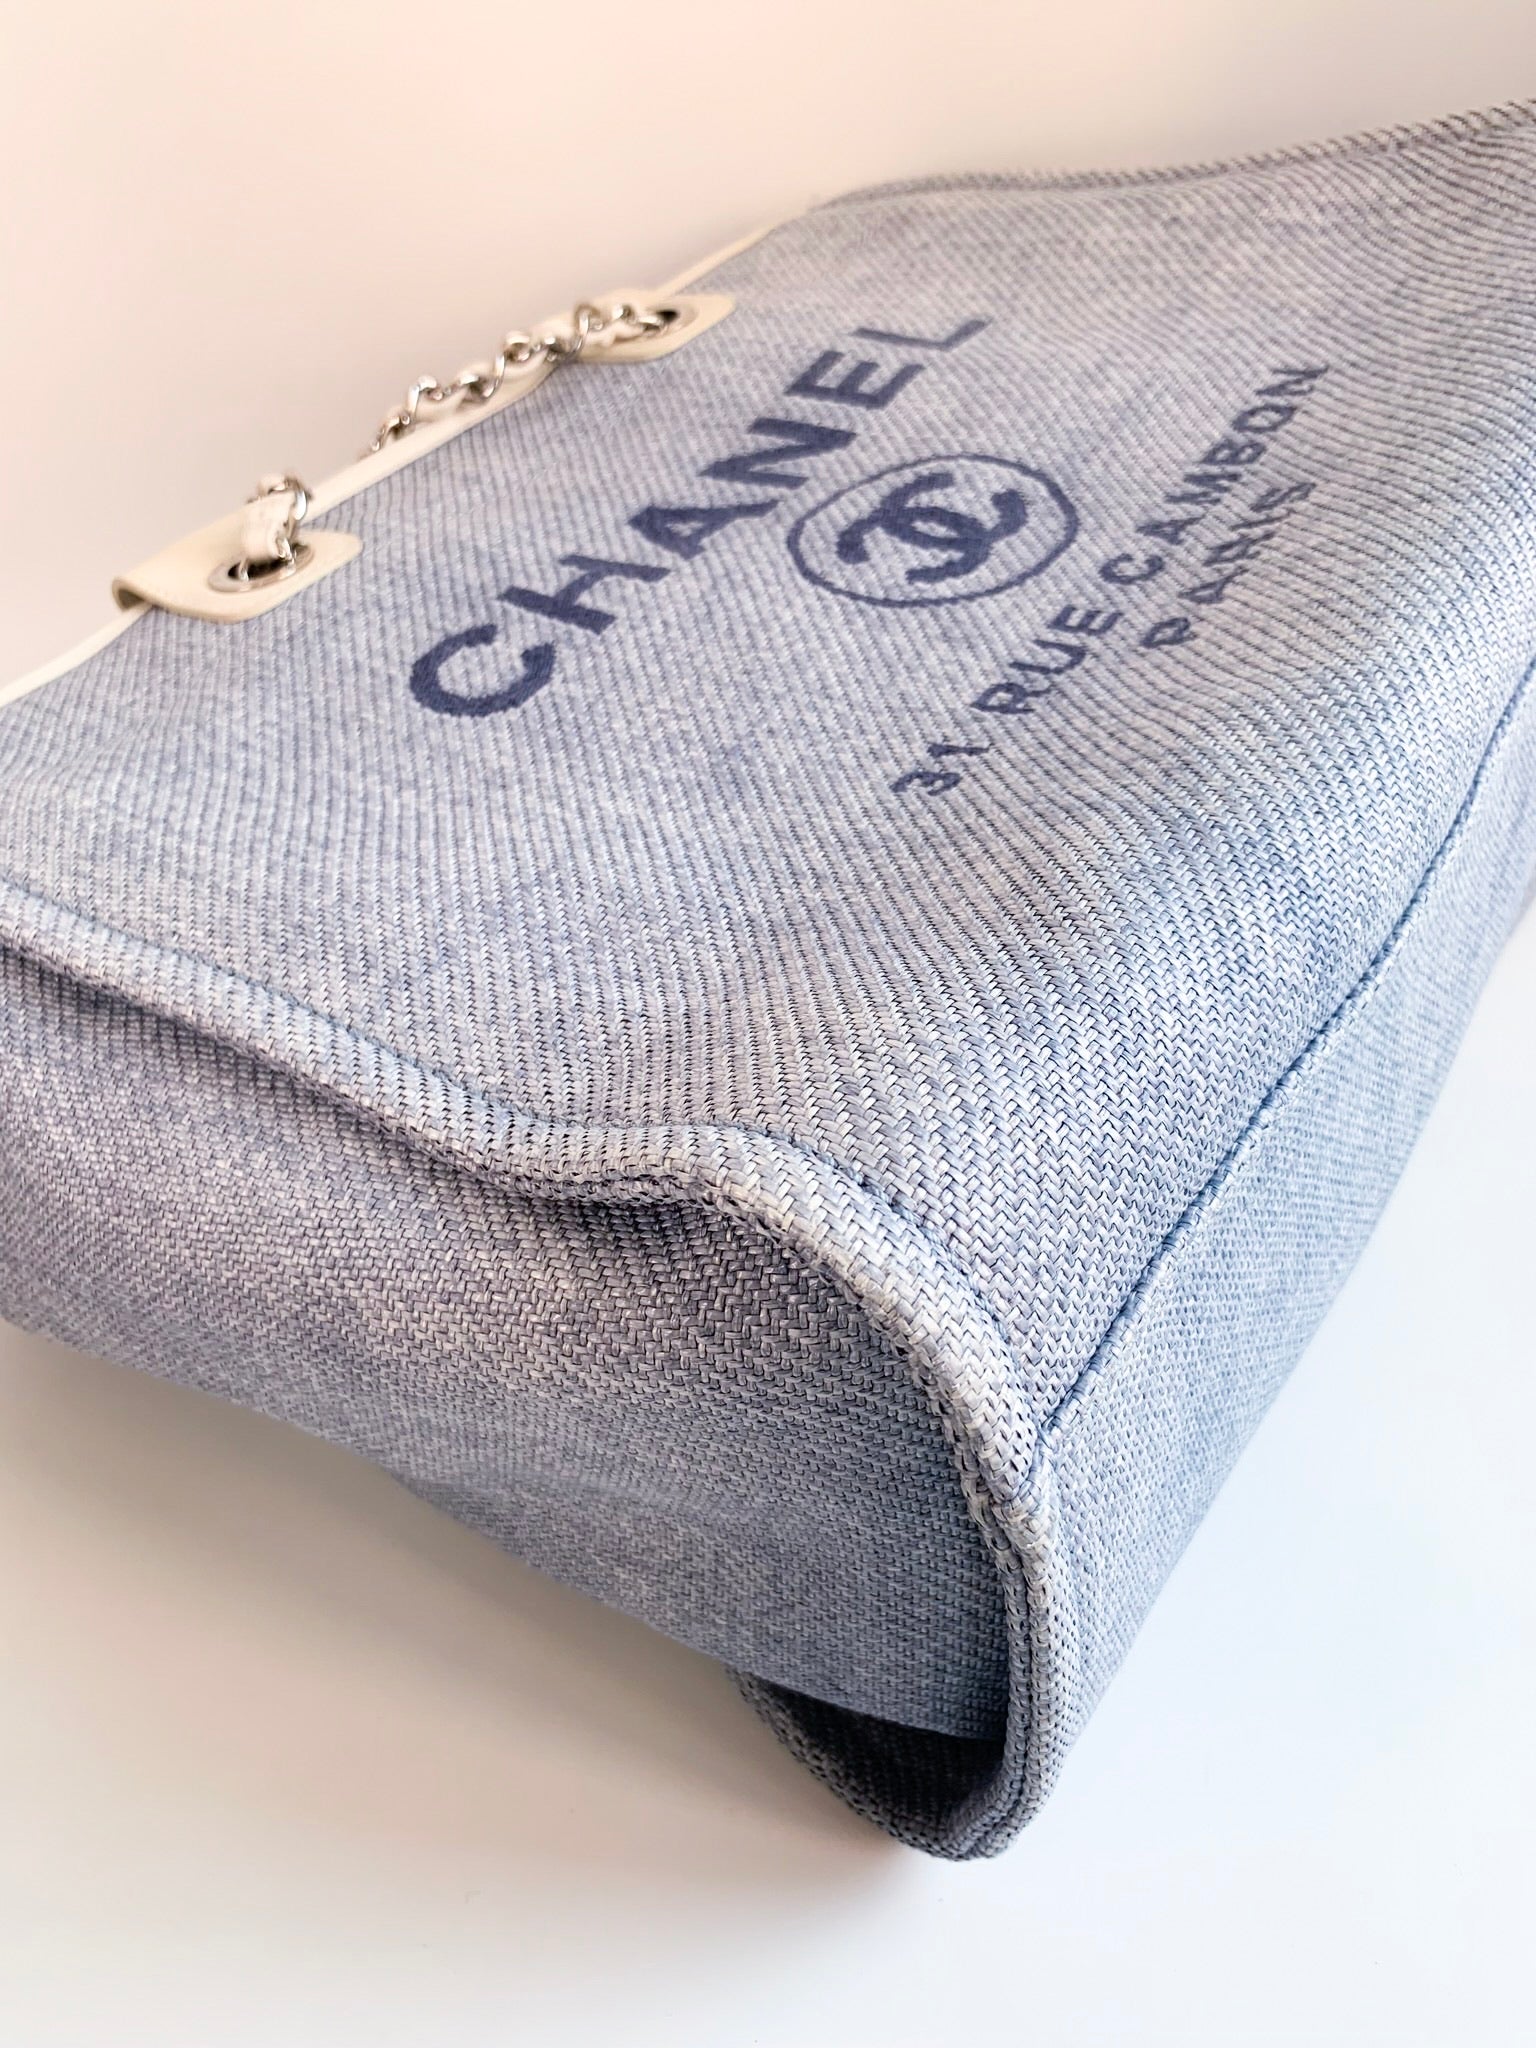 Chanel New Small Deauville Tote Light Blue Silver Hardware – Coco